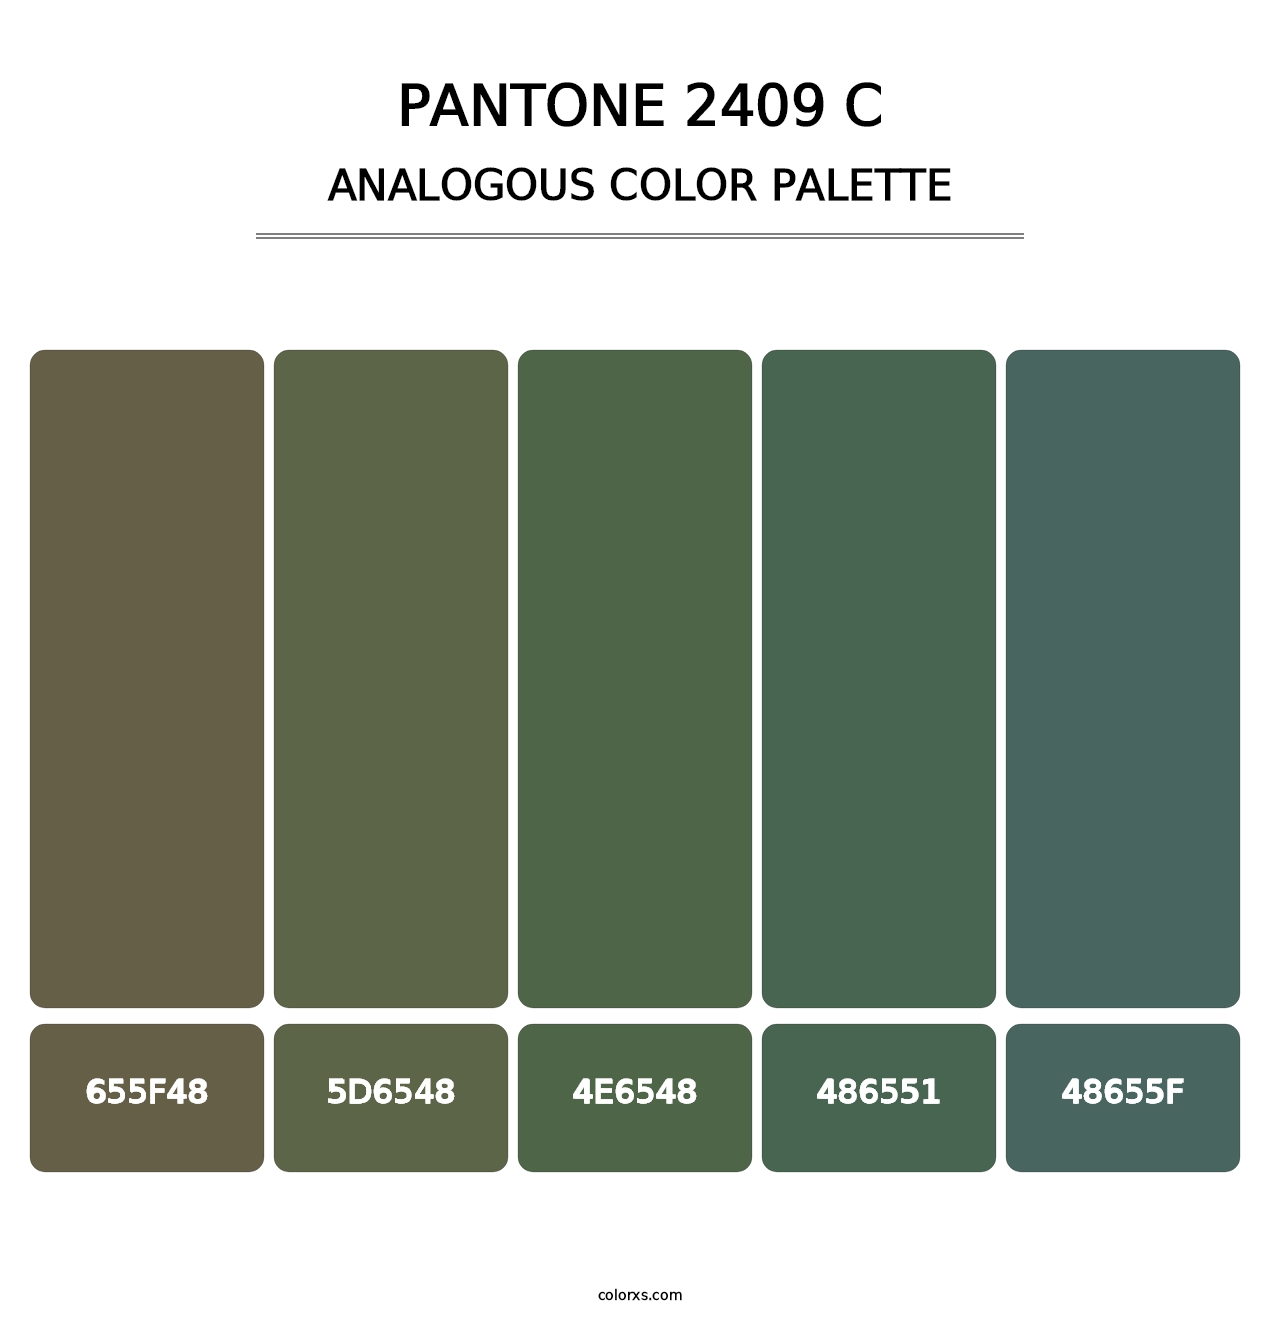 PANTONE 2409 C - Analogous Color Palette